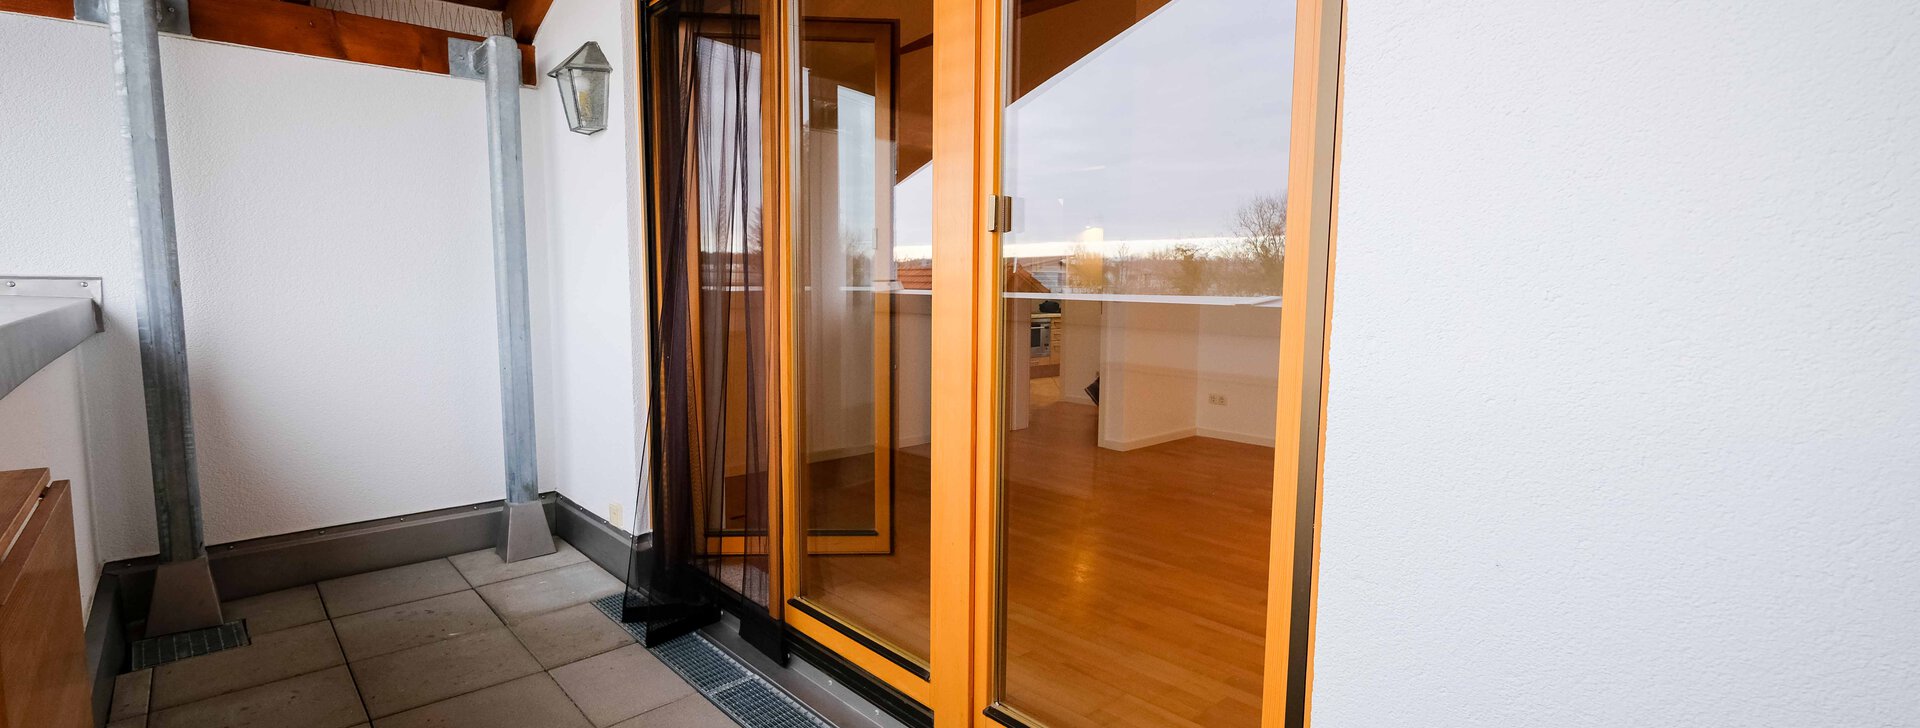 4-Zimmer-Wohnung in Grafing mit Balkon | © HausBauHaus GmbH Traunstein